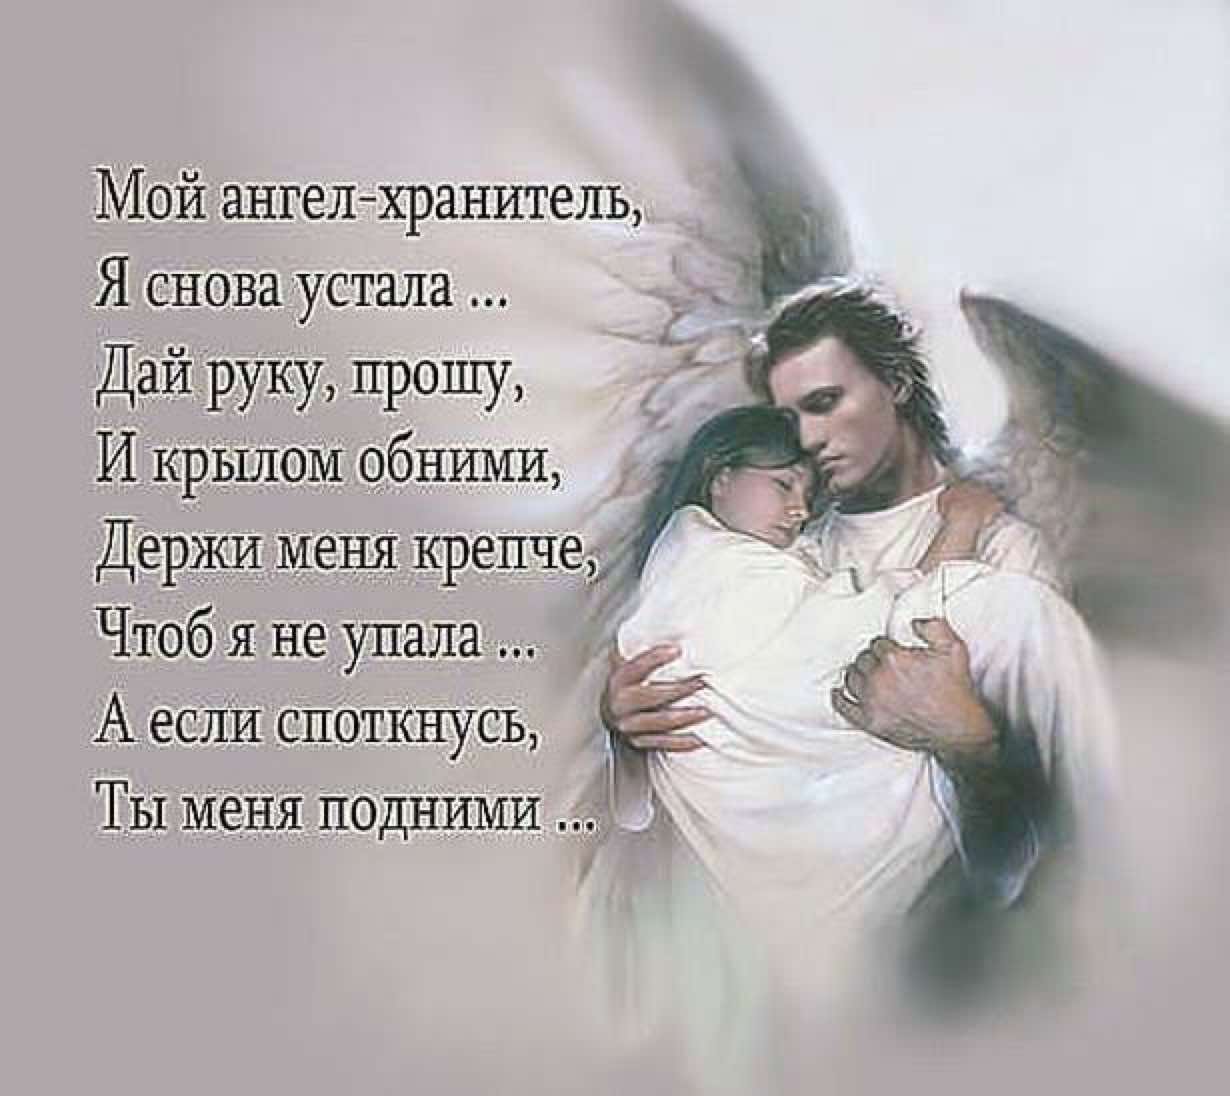 Ваш ангел хранитель благотворительный. Ангел-хранитель. Ангелов хранителей. Стих про ангела. Ангел хранитель я снова устала.